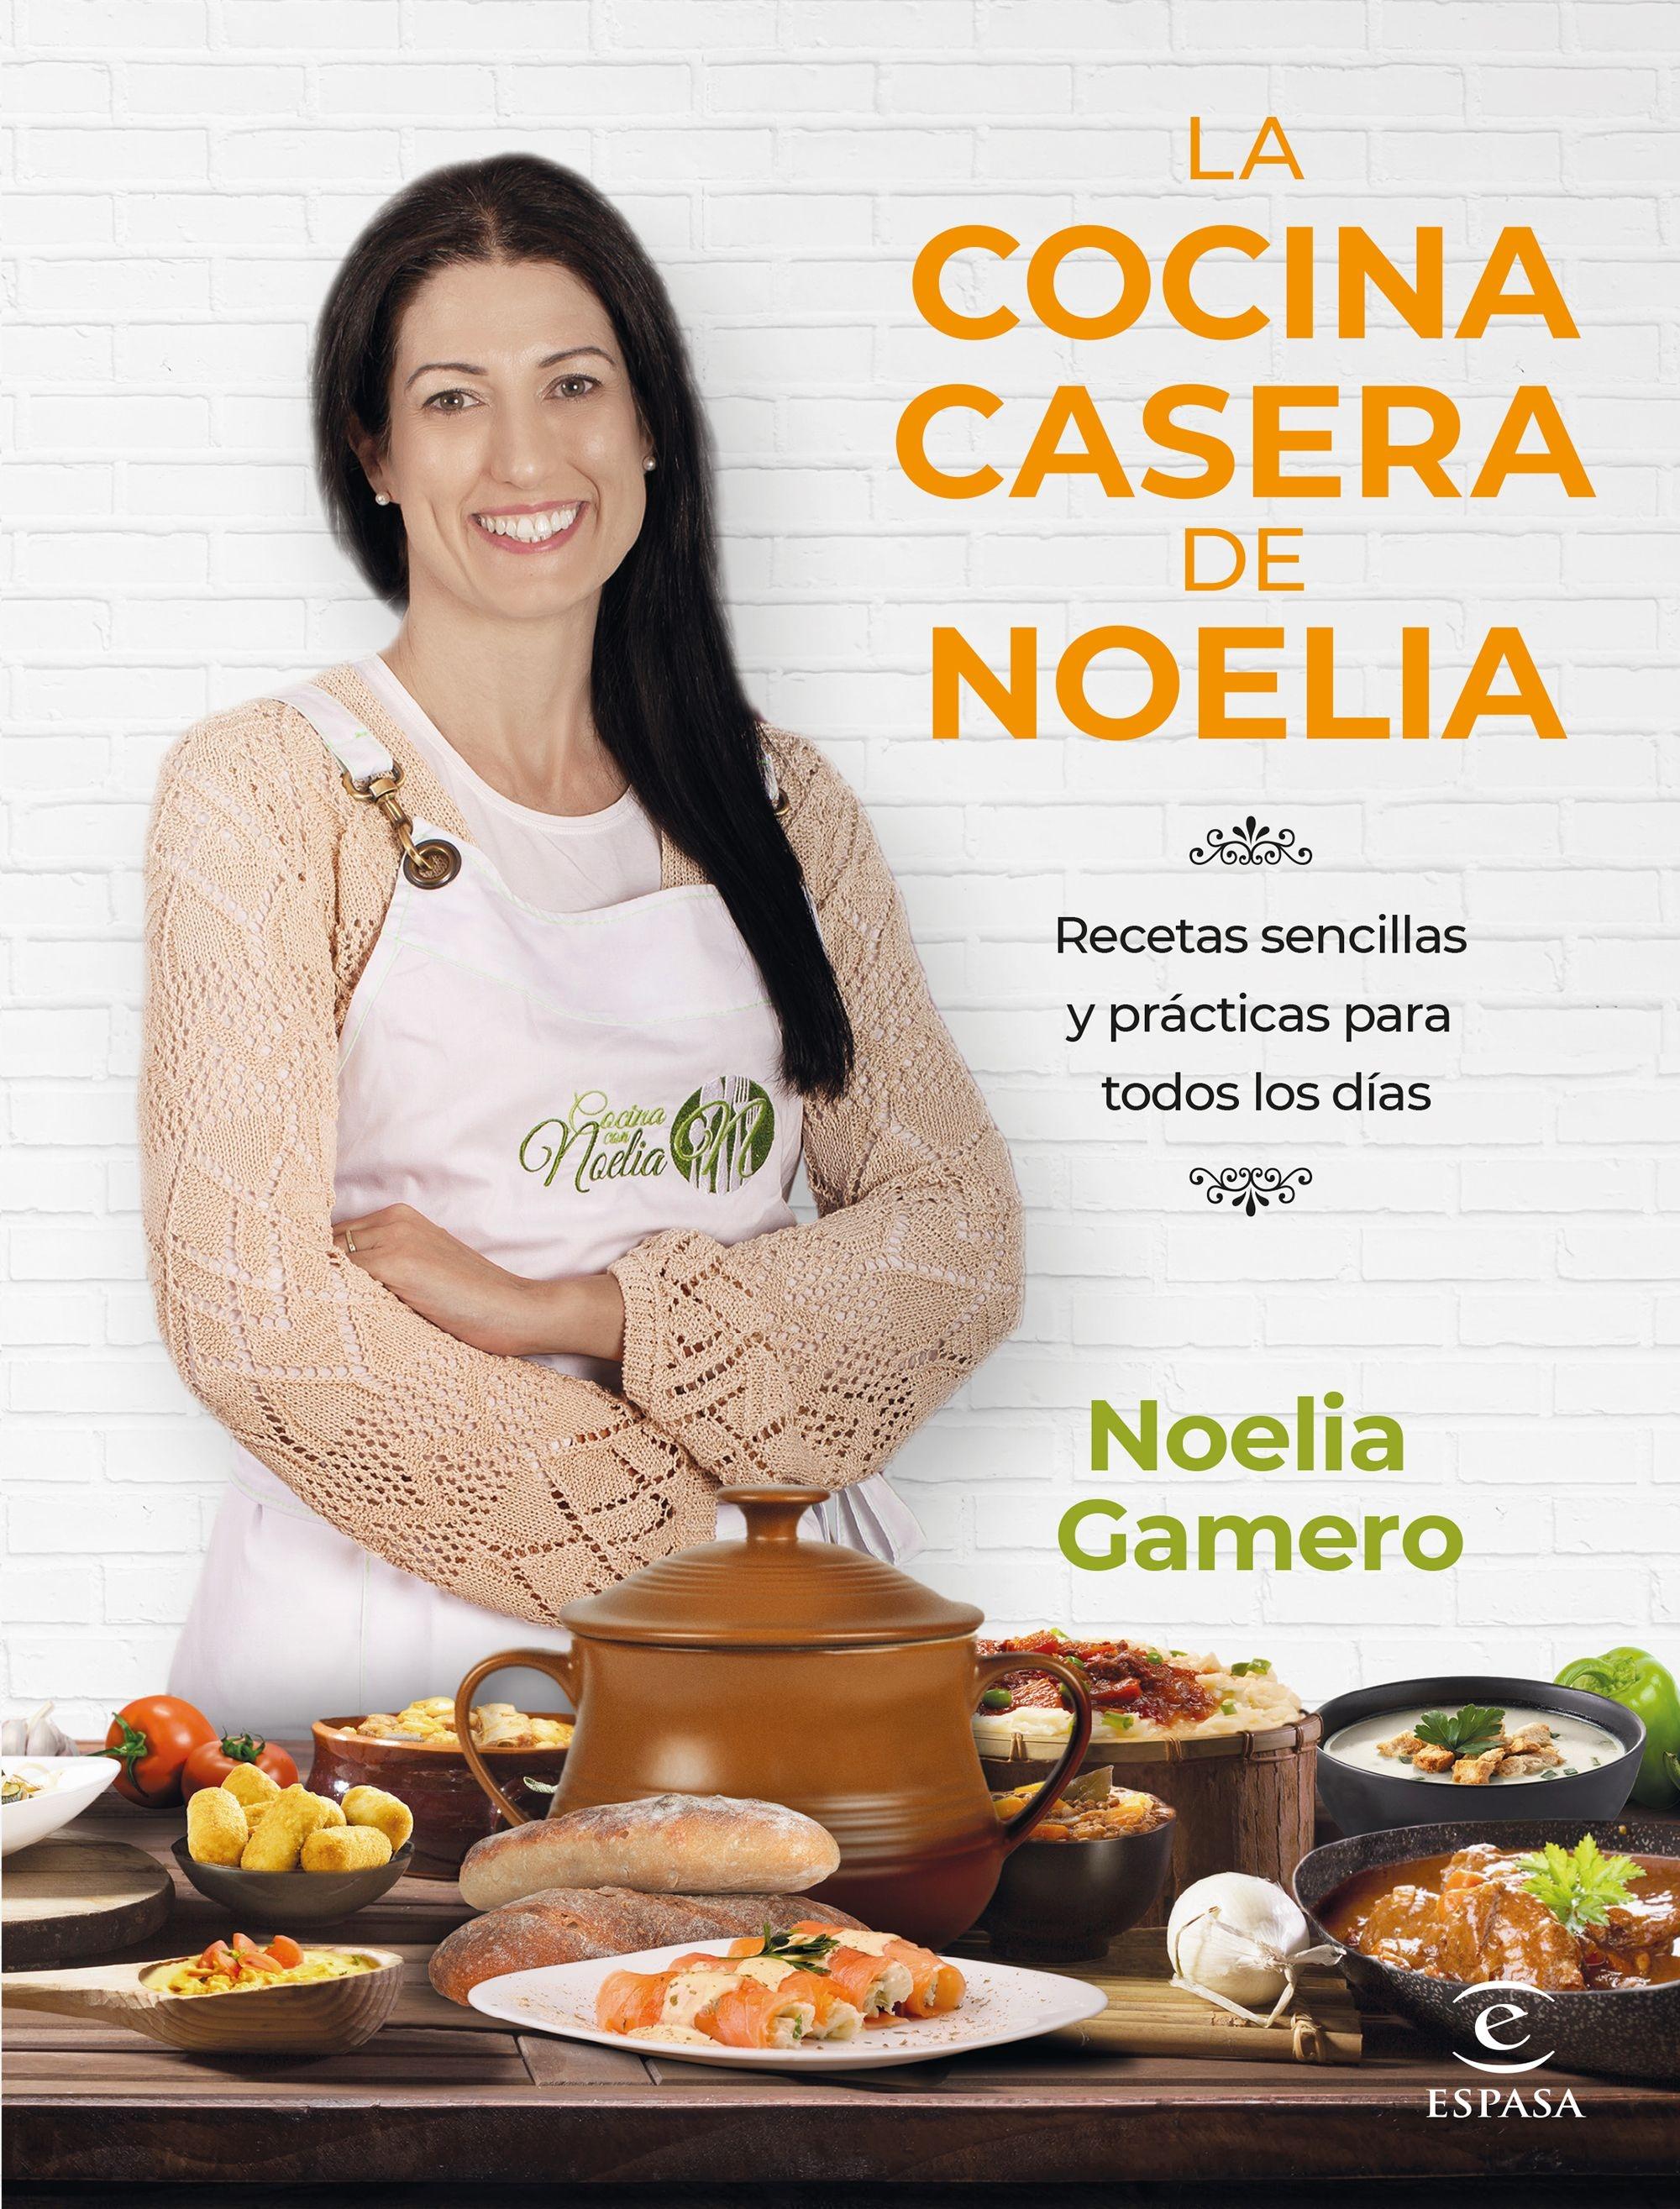 La Cocina Casera de Noelia. 